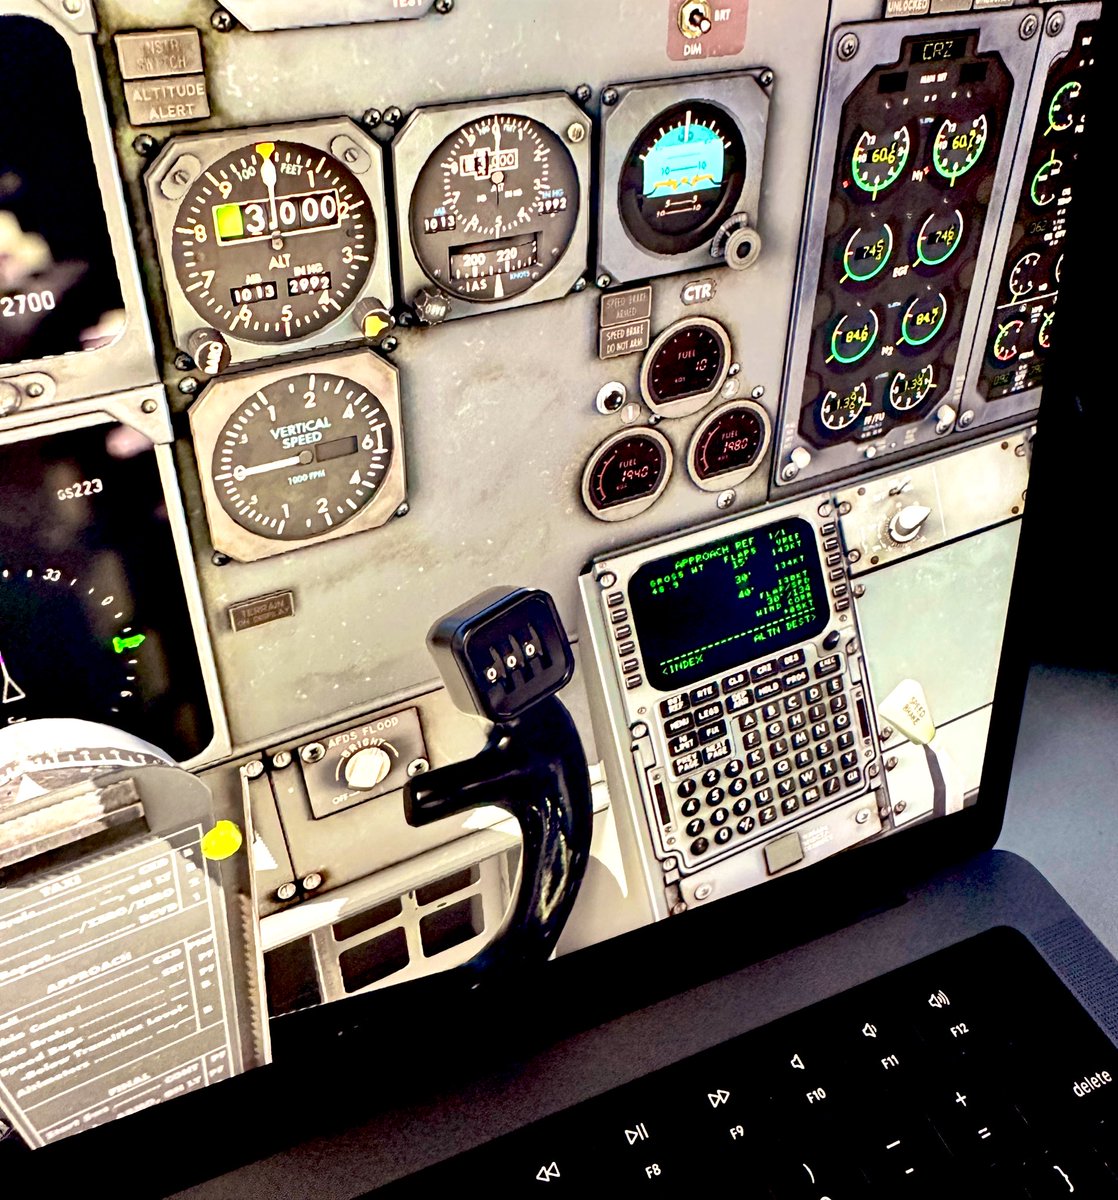 Очі бояться, руки роблять. Геть пропустив реліз Xplane 12, тестував на ньому улюблену модель 737 classic. Що що, а флайт модель багато в чому стала максимально наближена до реальності. Якось грав у VR то на мить здалось що чую запах кабіни і літака.